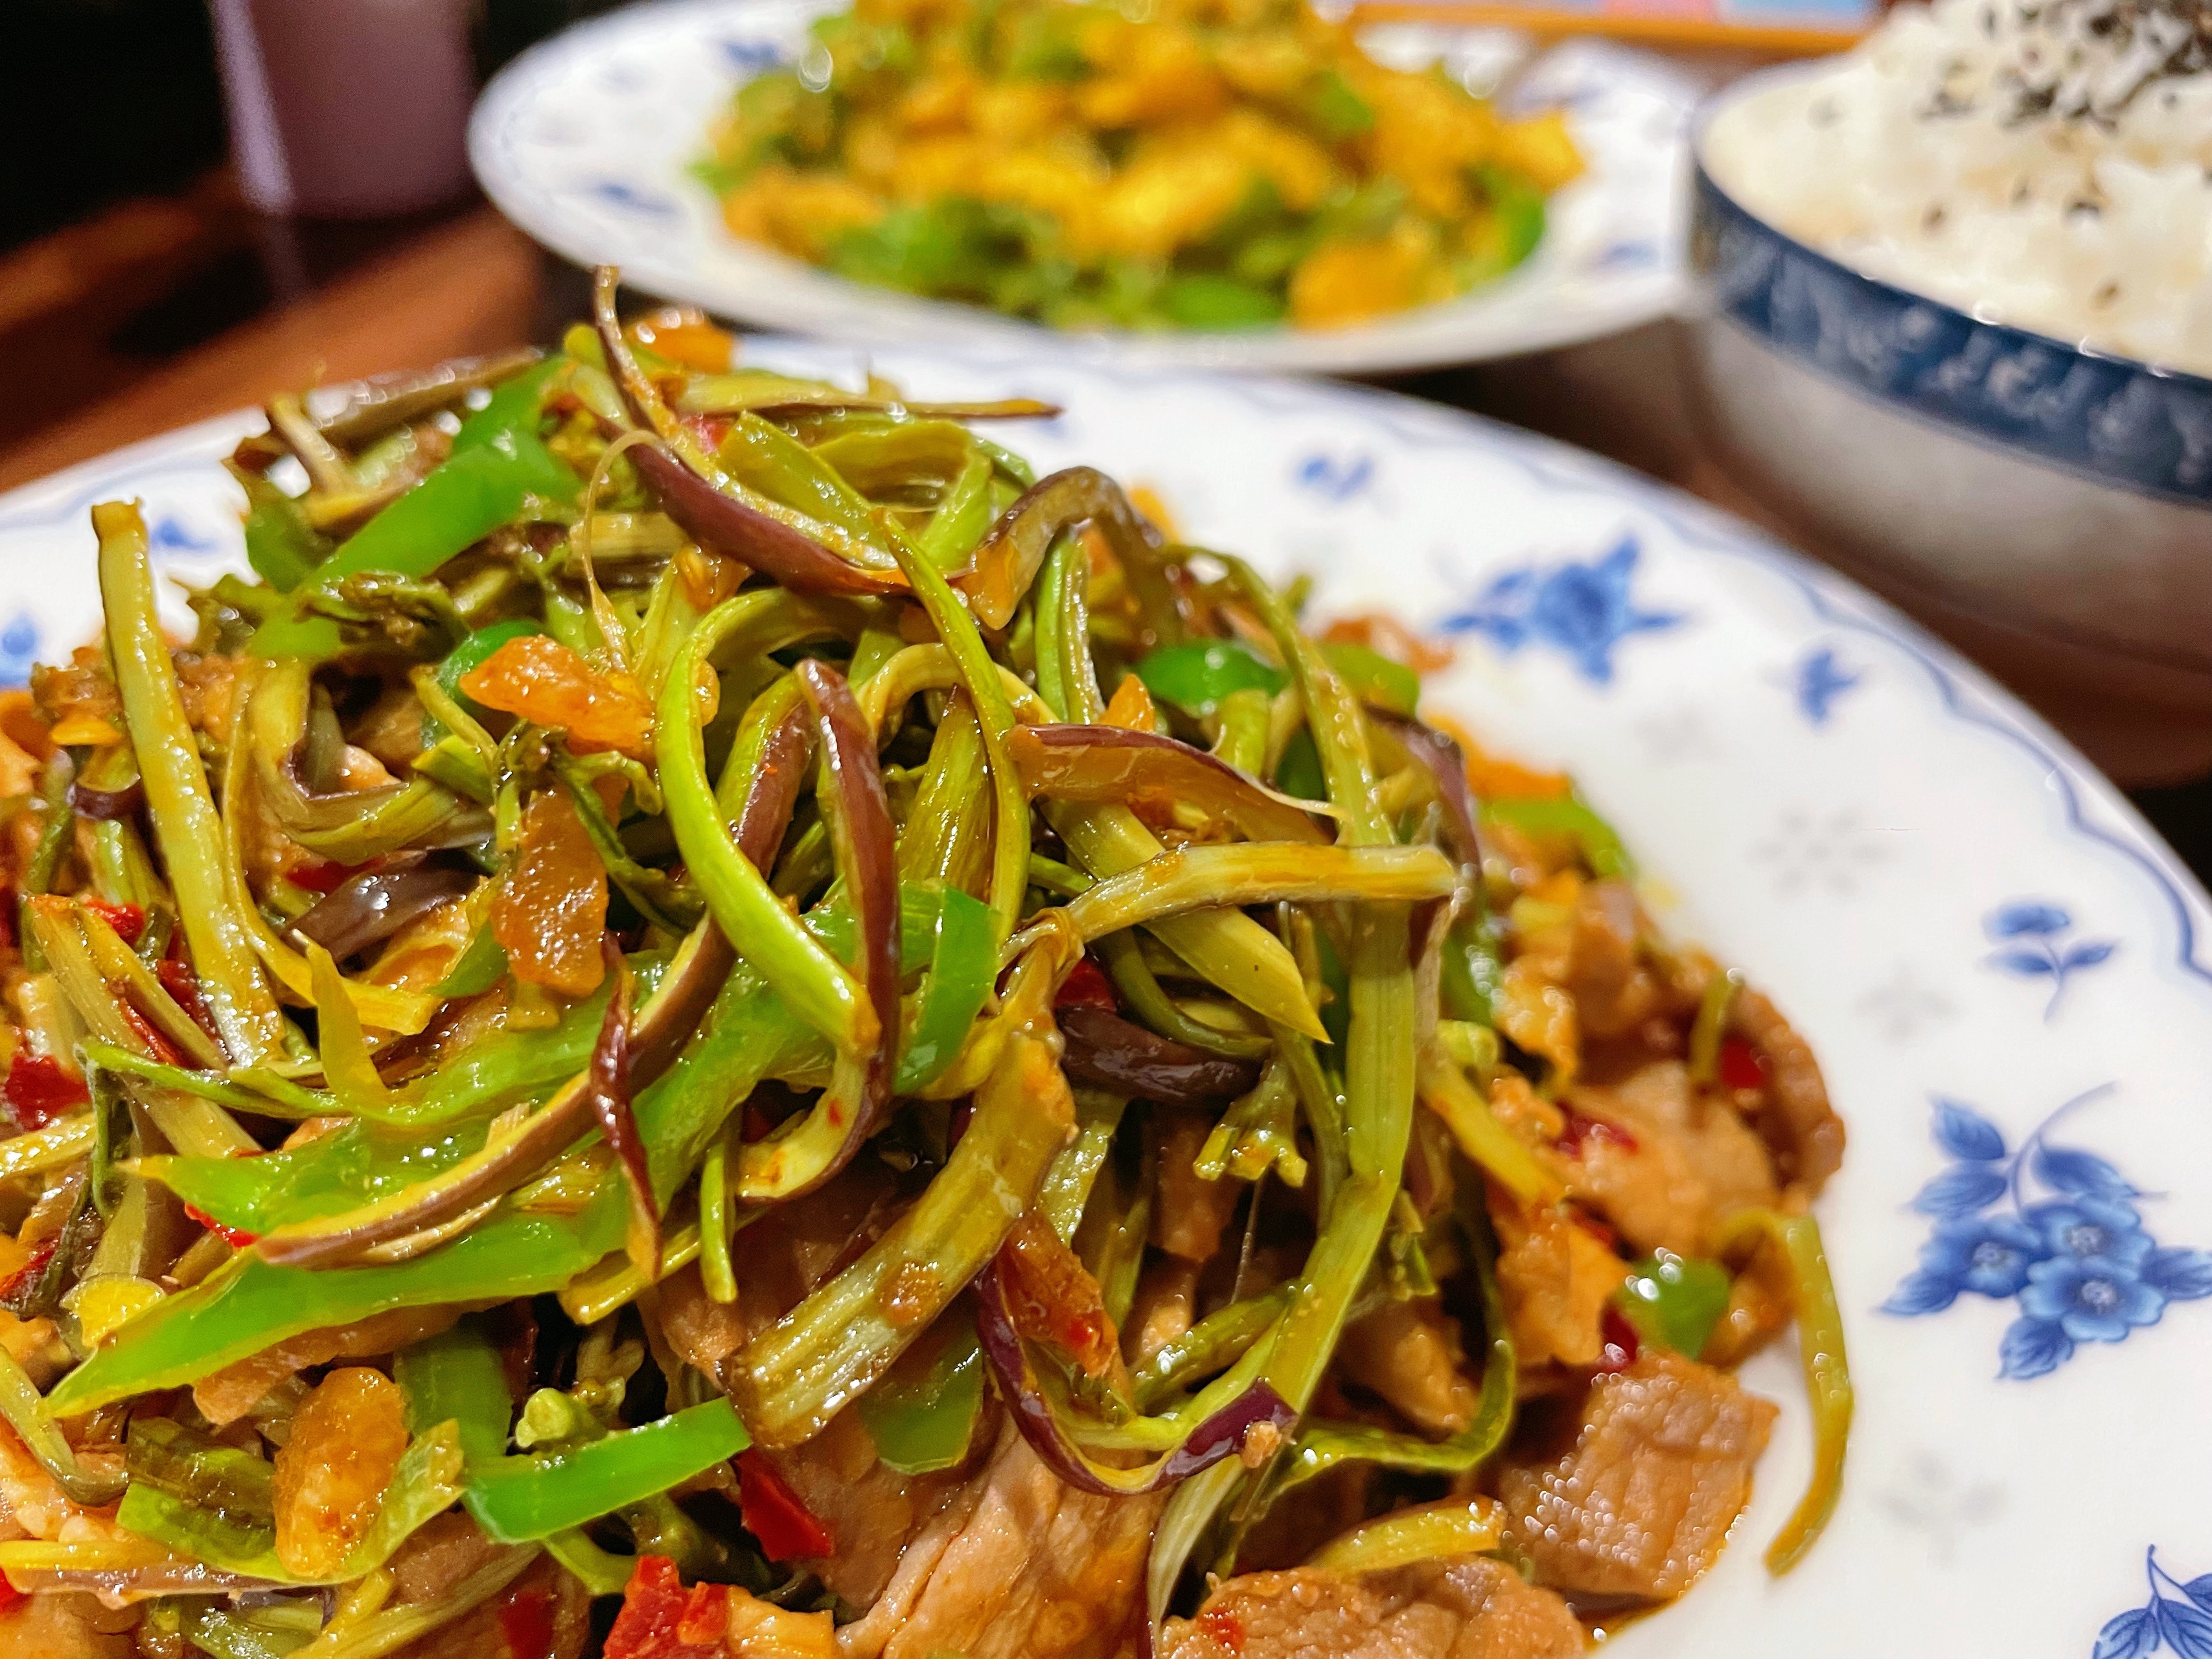 鲜蕨菜炒肉